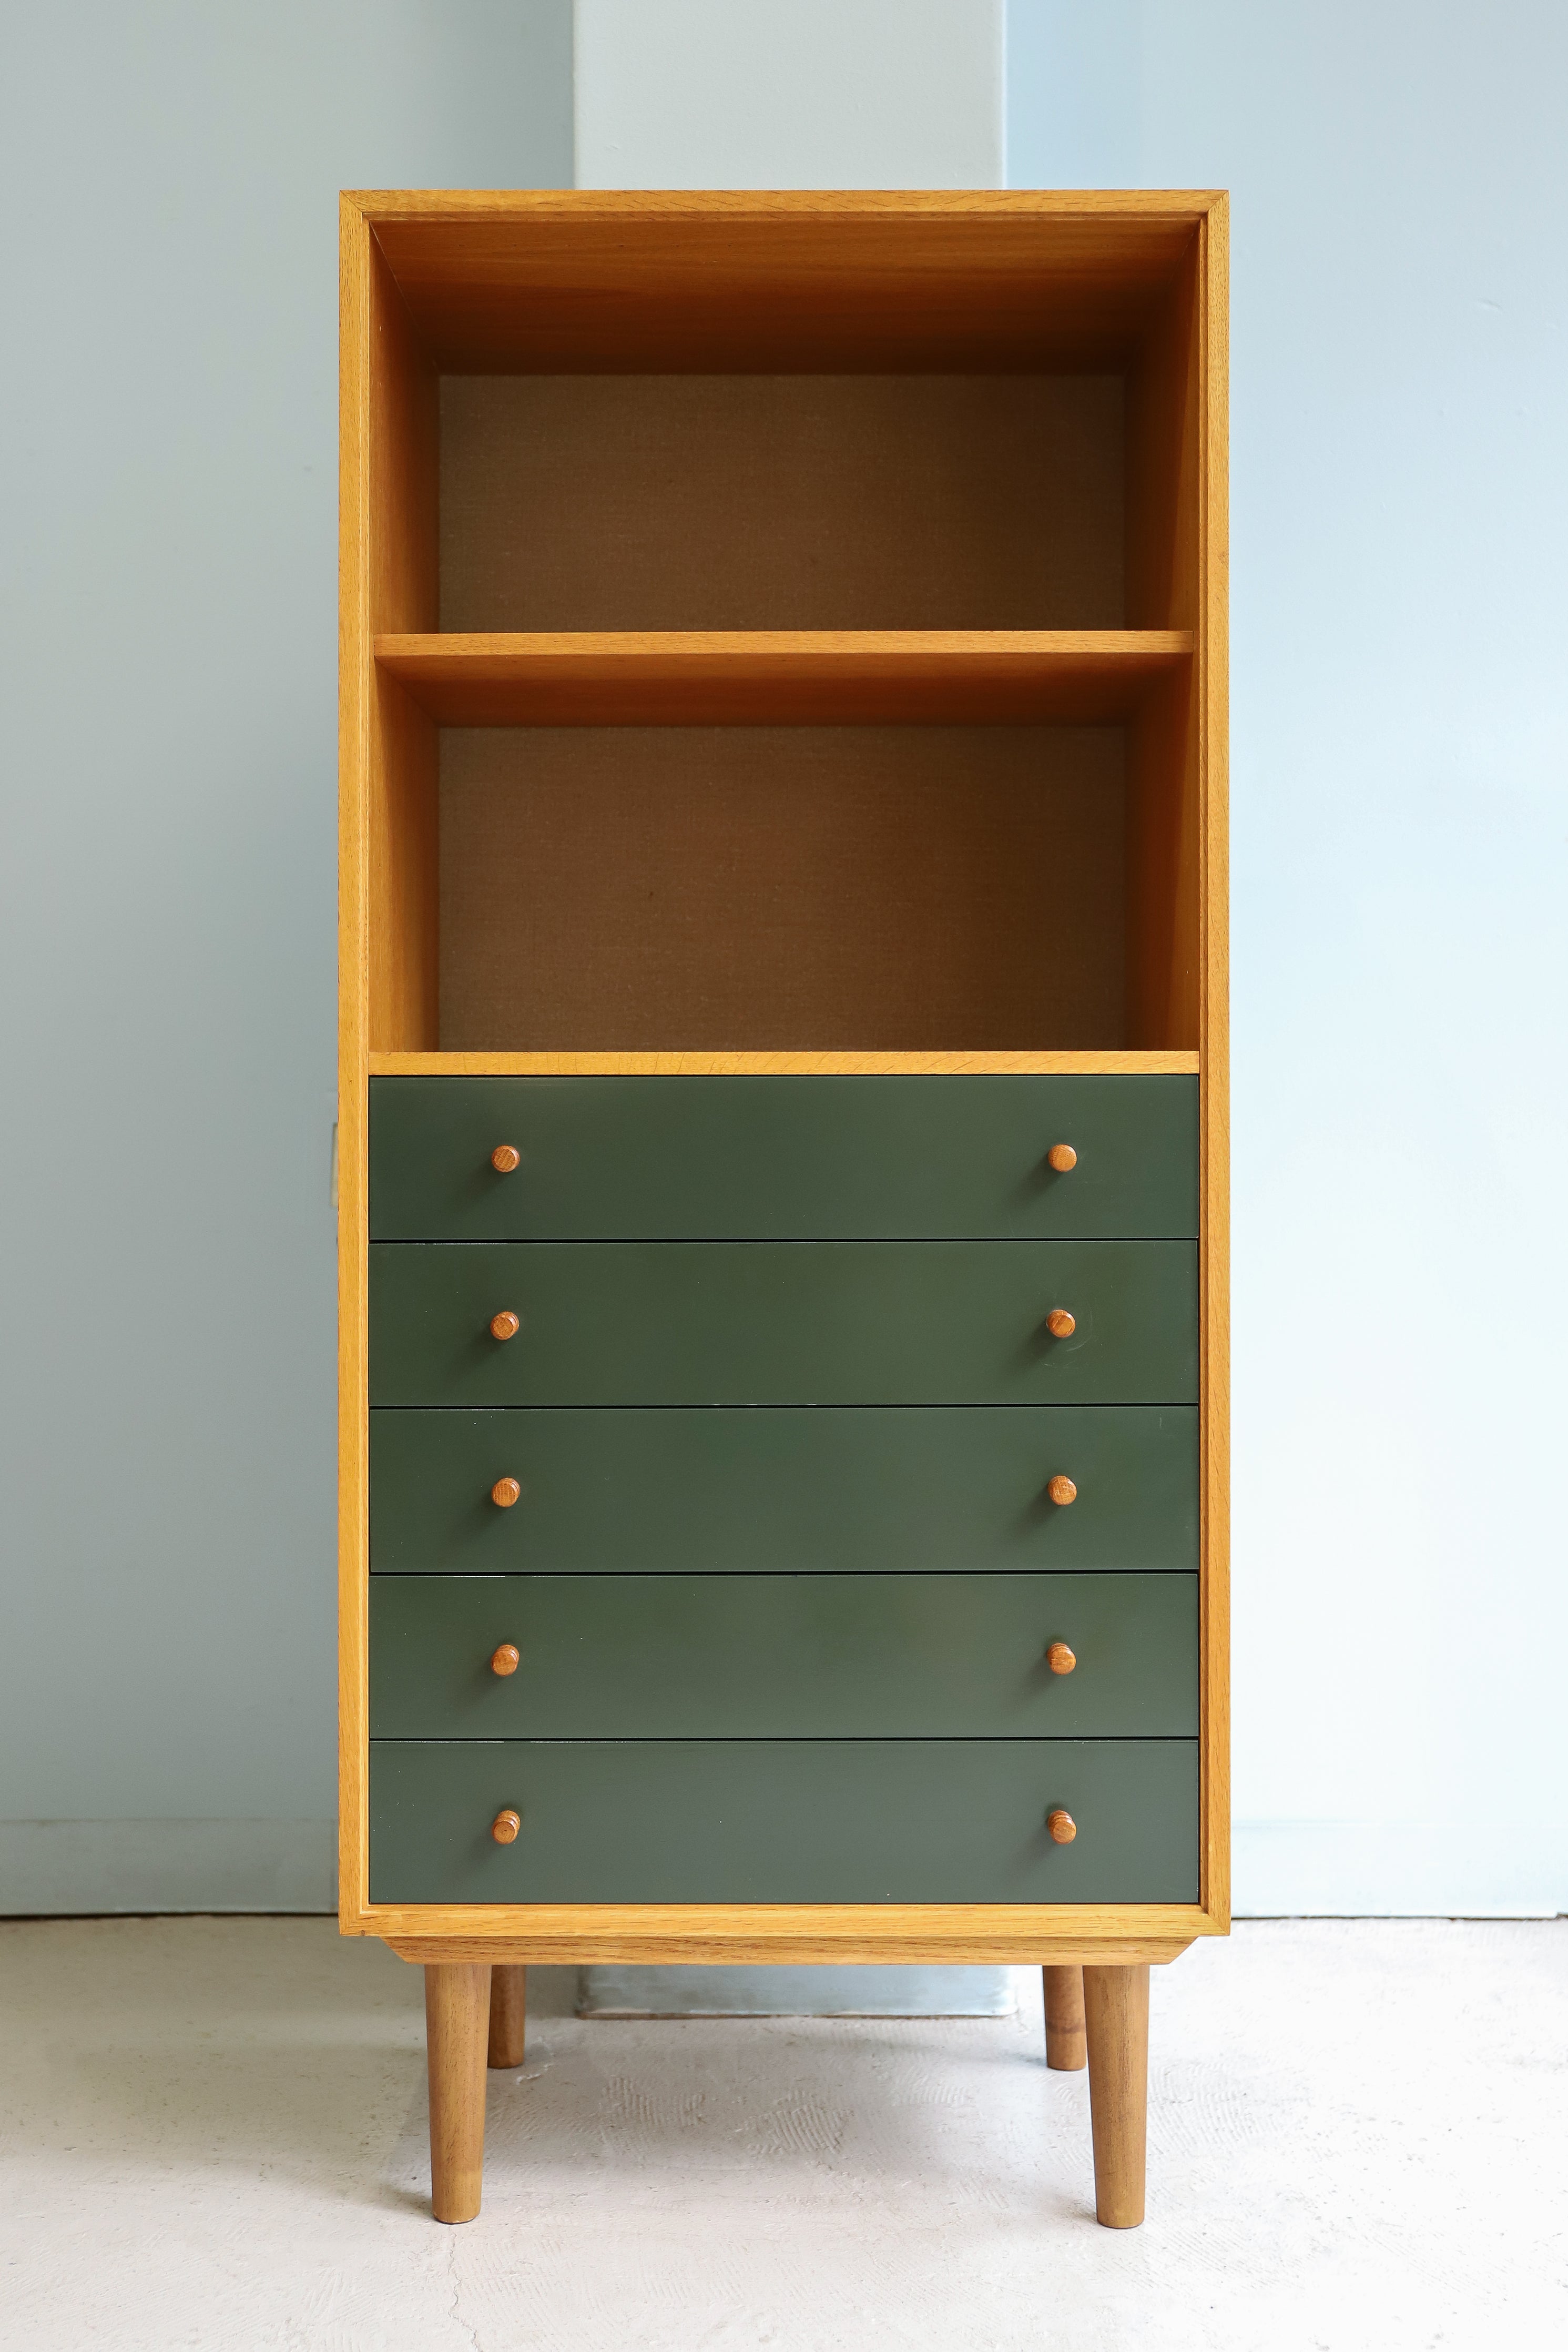 HG Møbler Oakwood Bookcase Shelf Danish Vintage/デンマークヴィンテージ ブックケース シェルフ オーク材 収納家具 北欧インテリア